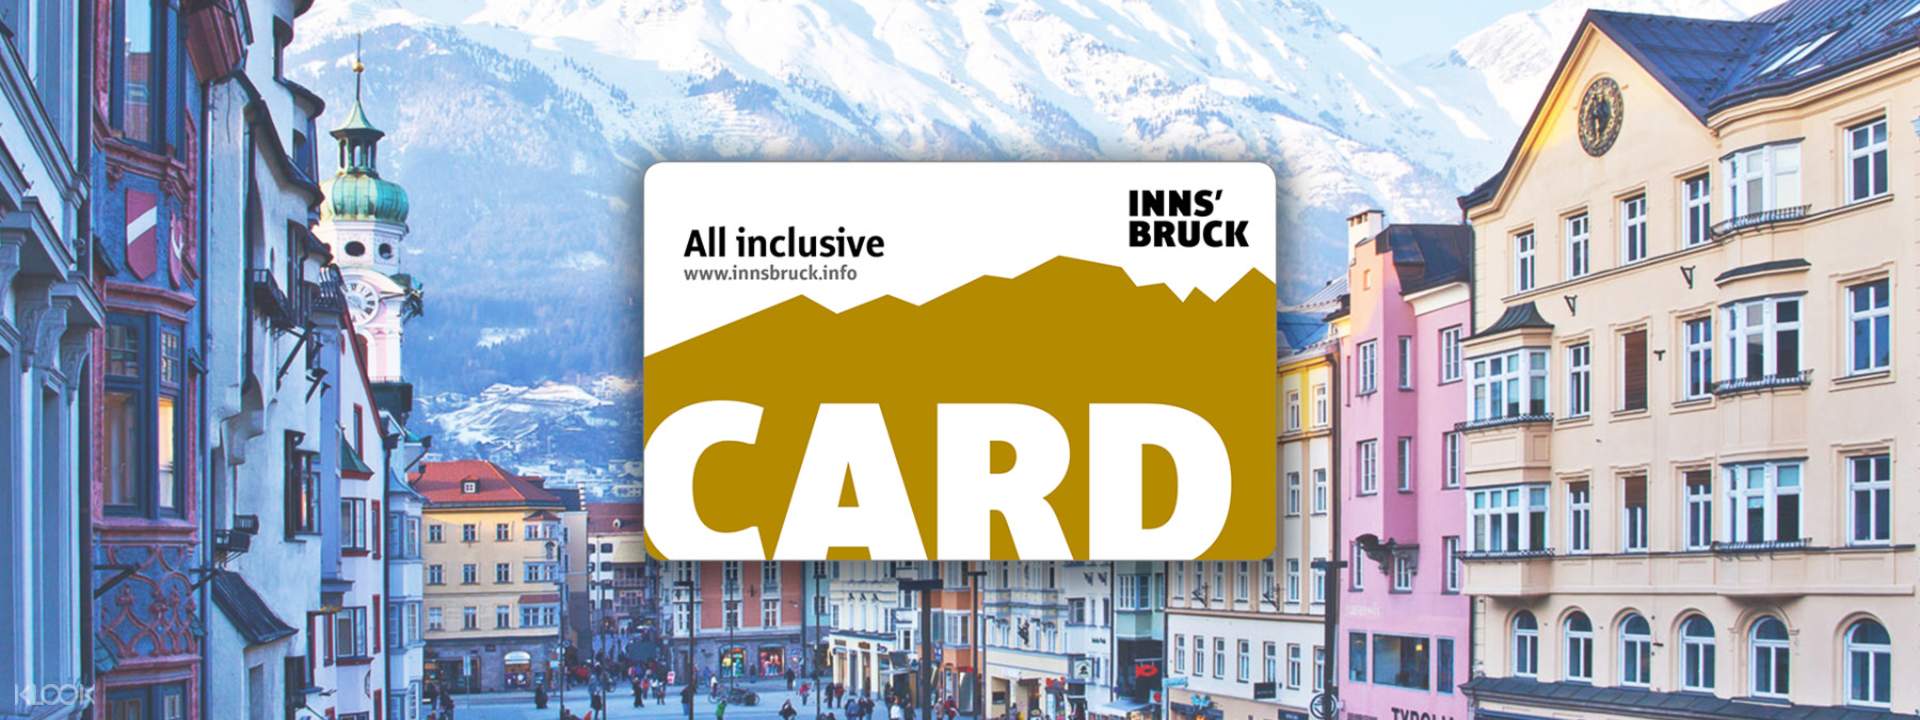 innsbruck tourist card